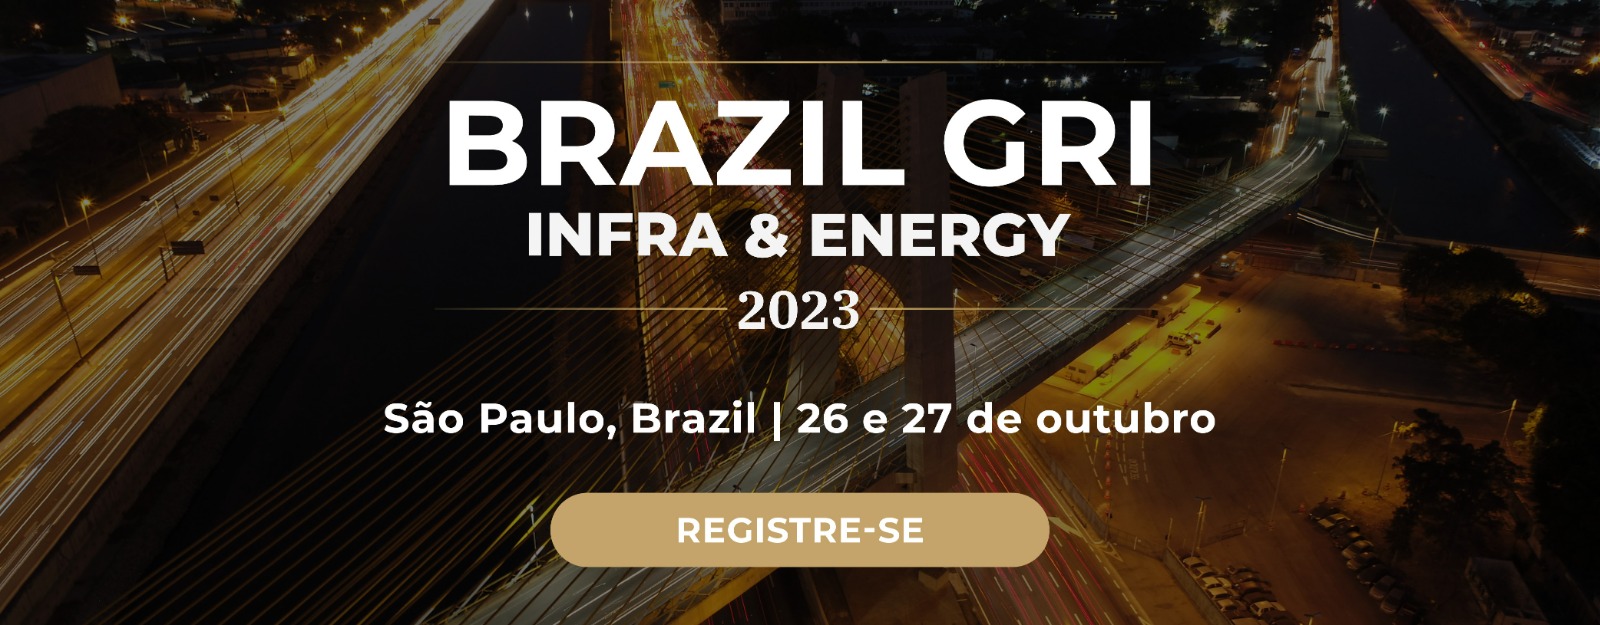 Brazil GRI Infra & Energy 